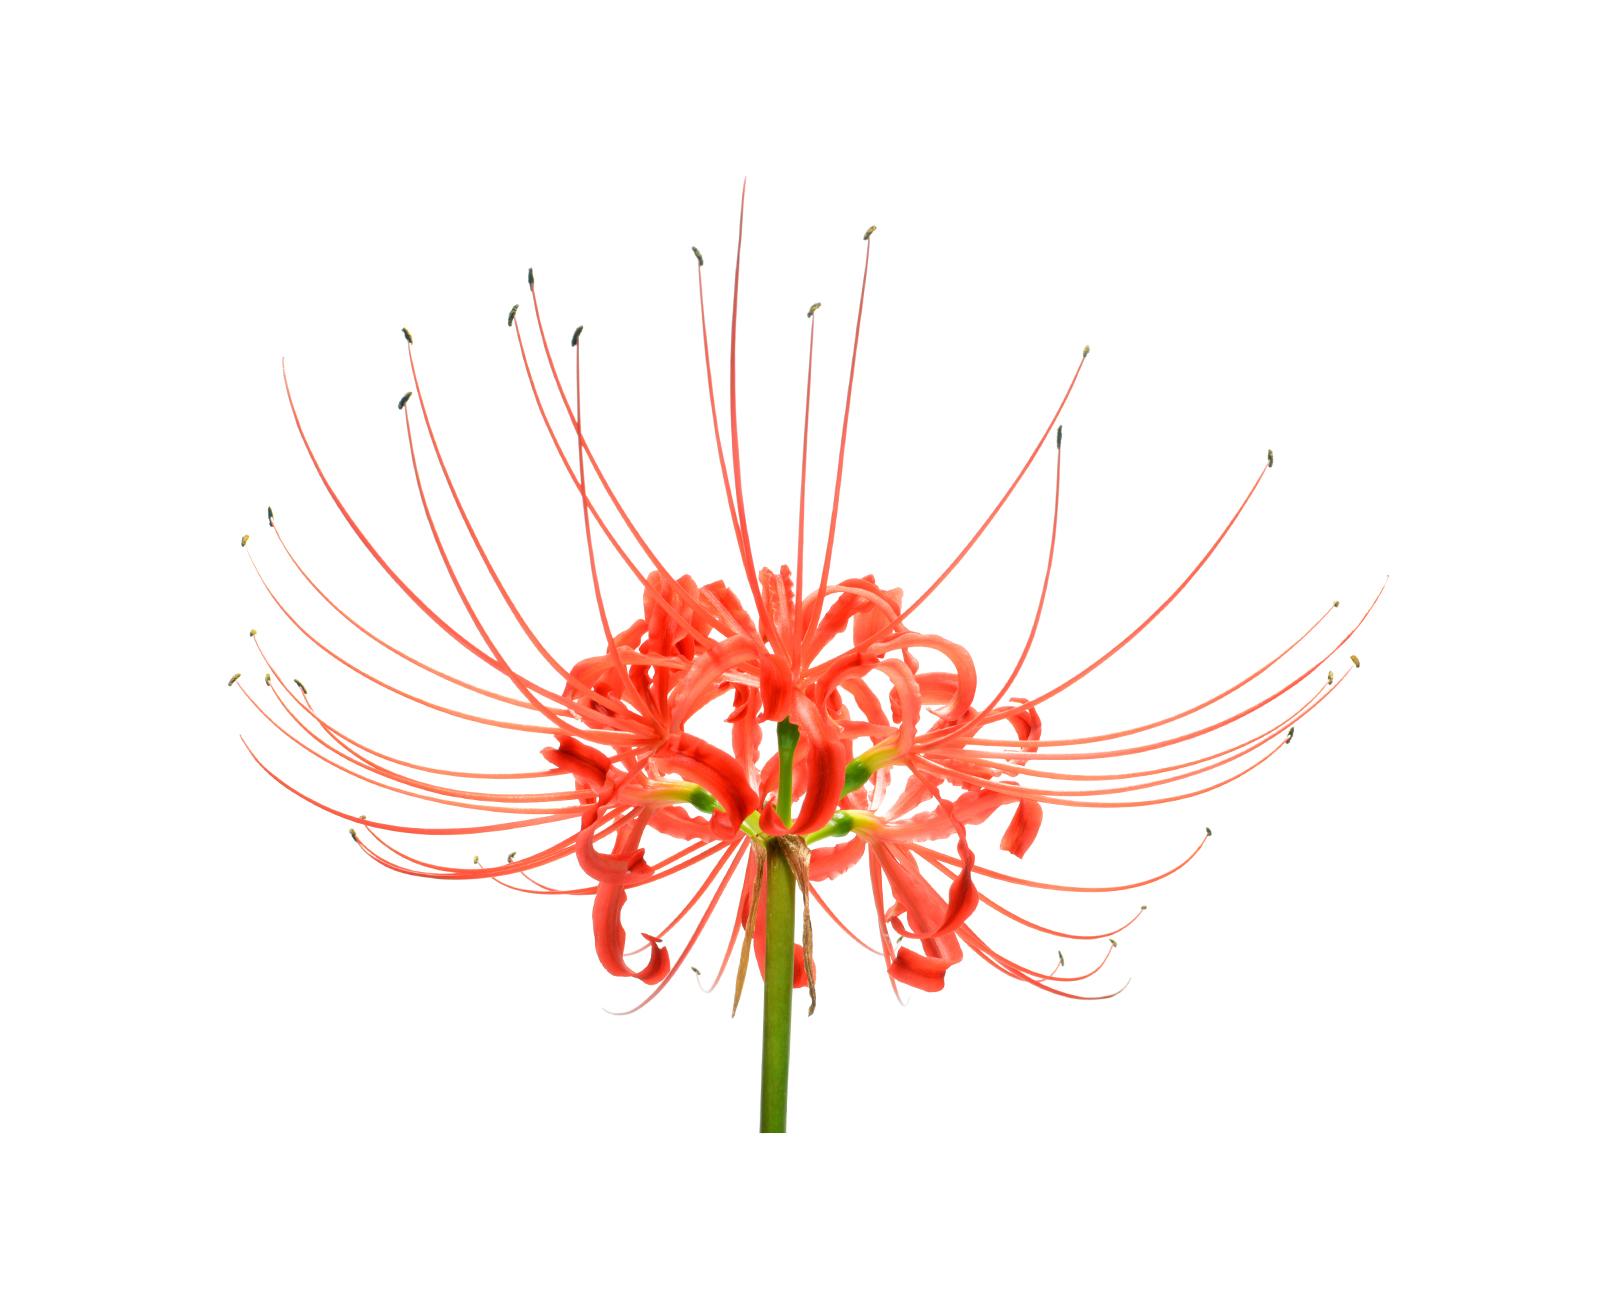 GREVILLEA SPECIOSA FLOWER EXTRACT - Grevillea Speciosa Flower Extract